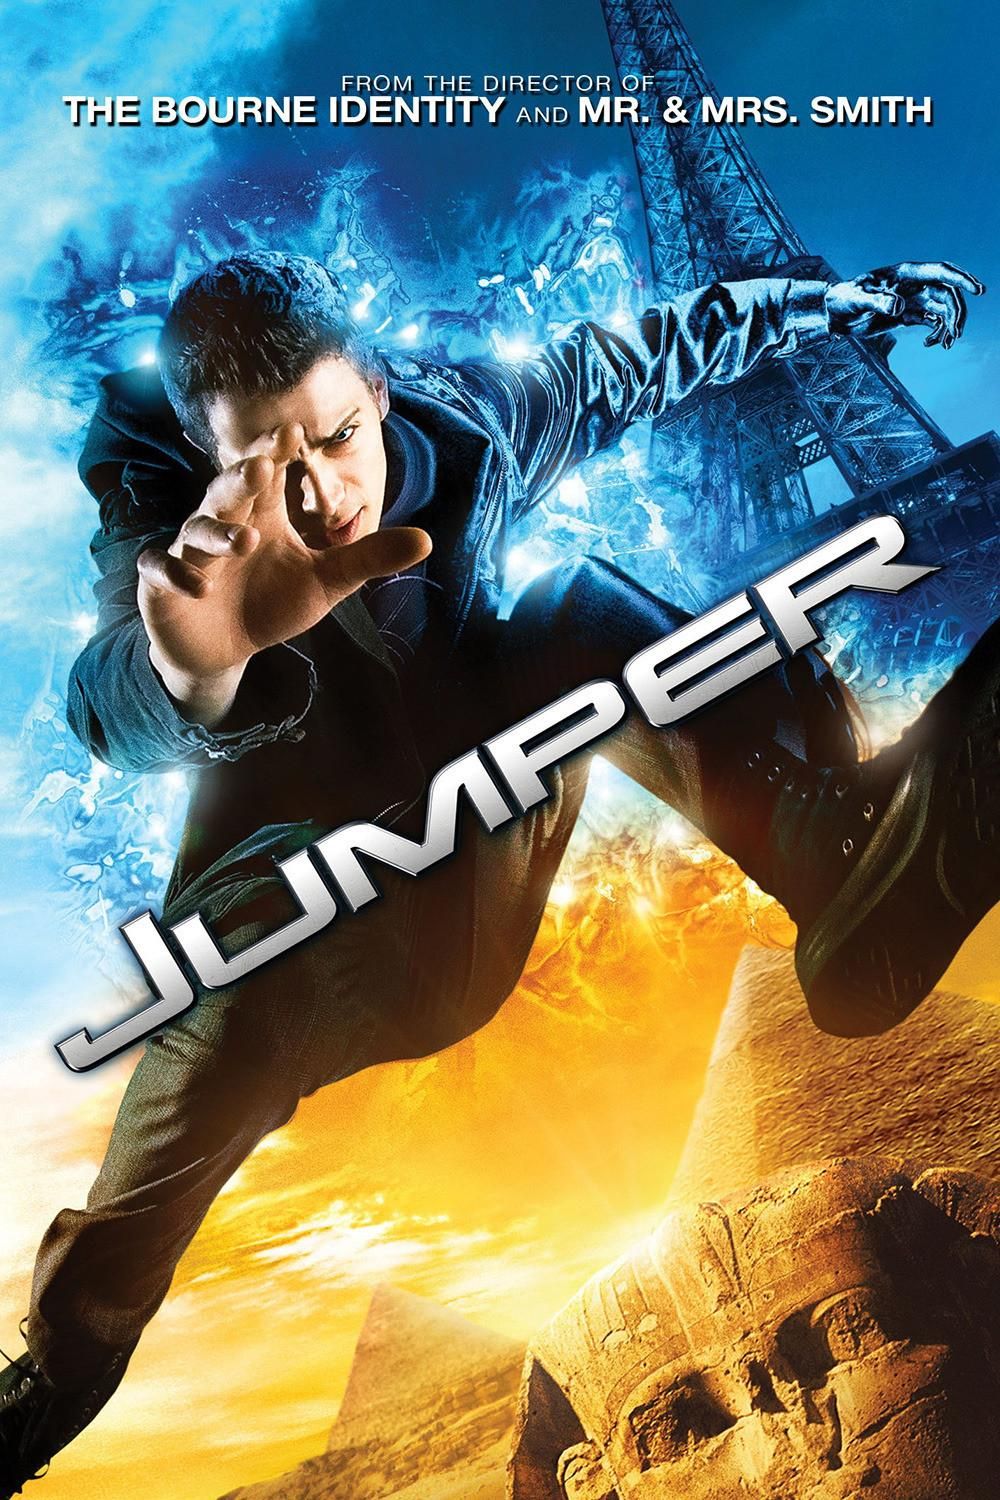 Stiahni si HD Filmy Jumper (2008)(CZ/SK/EN)[1080p] = CSFD 59%